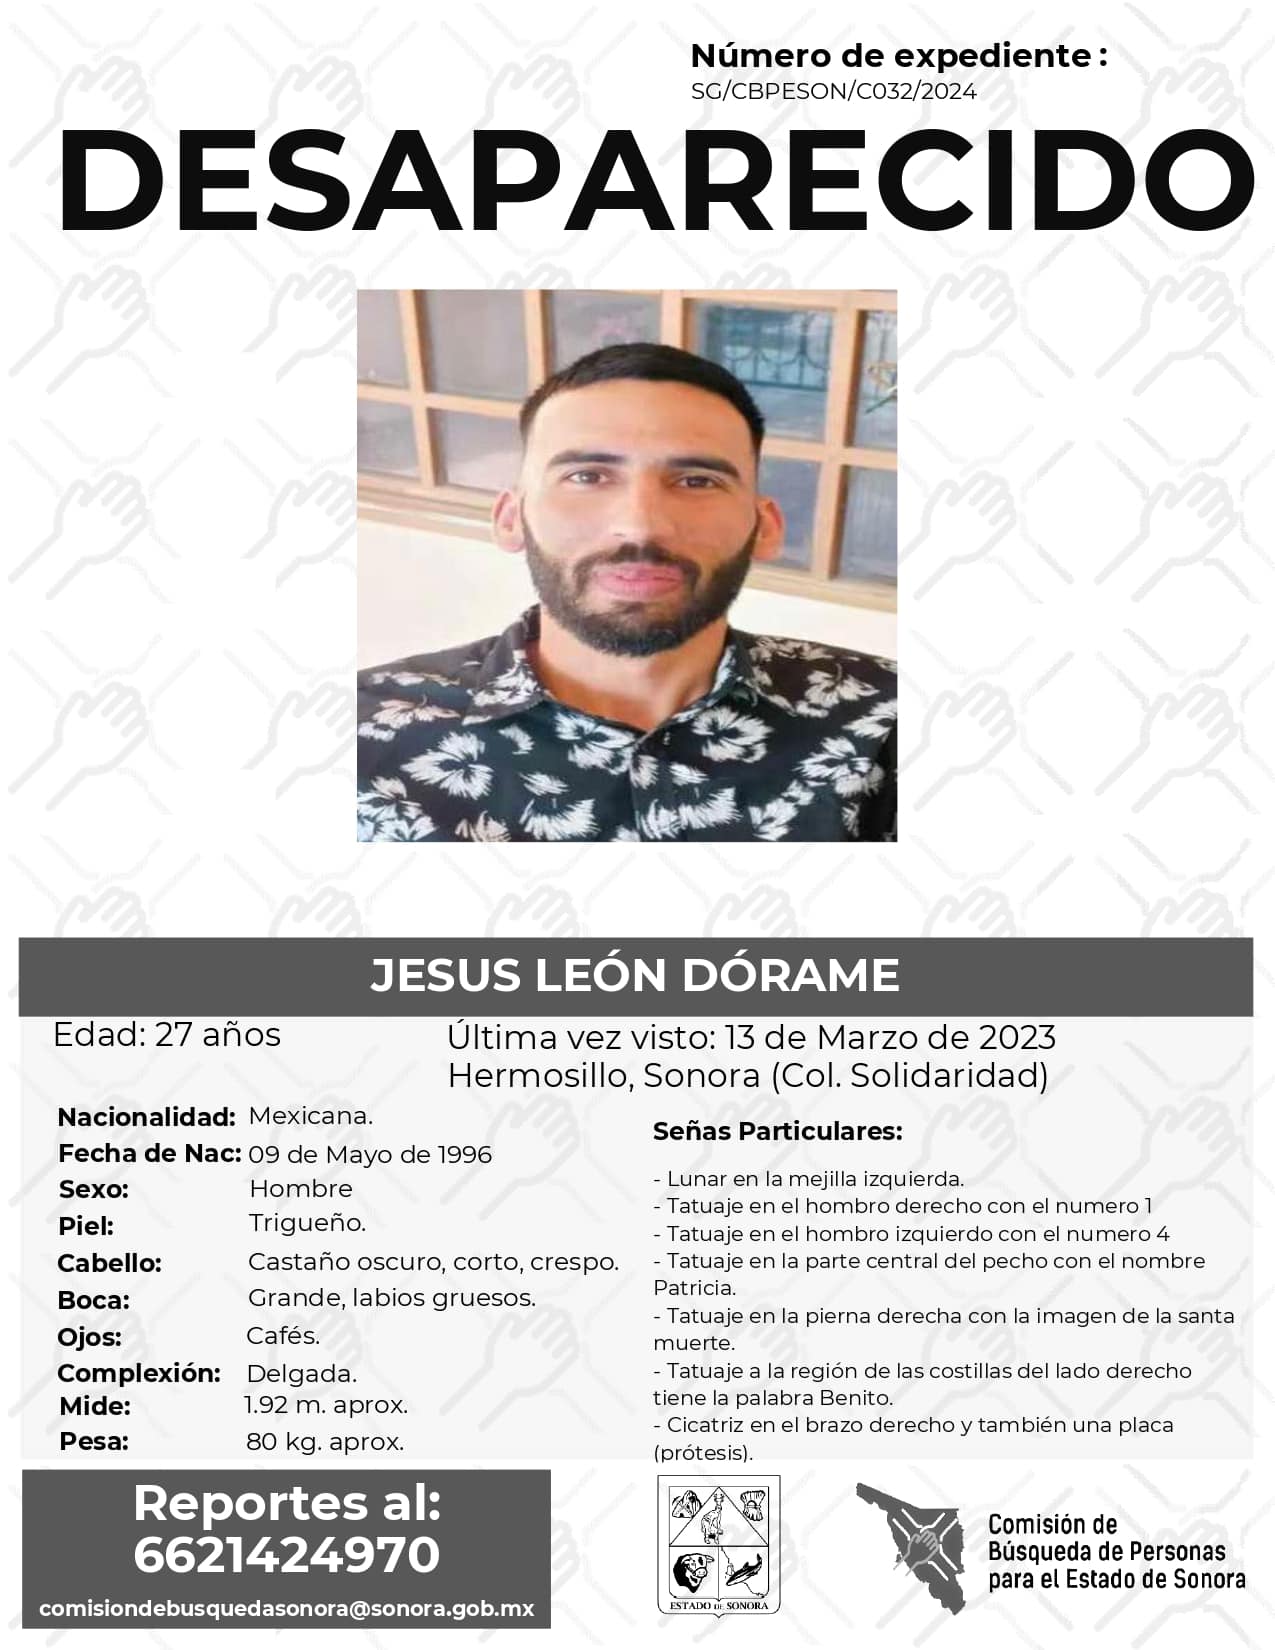 JESUS LEON DORAME - DESAPARECIDO